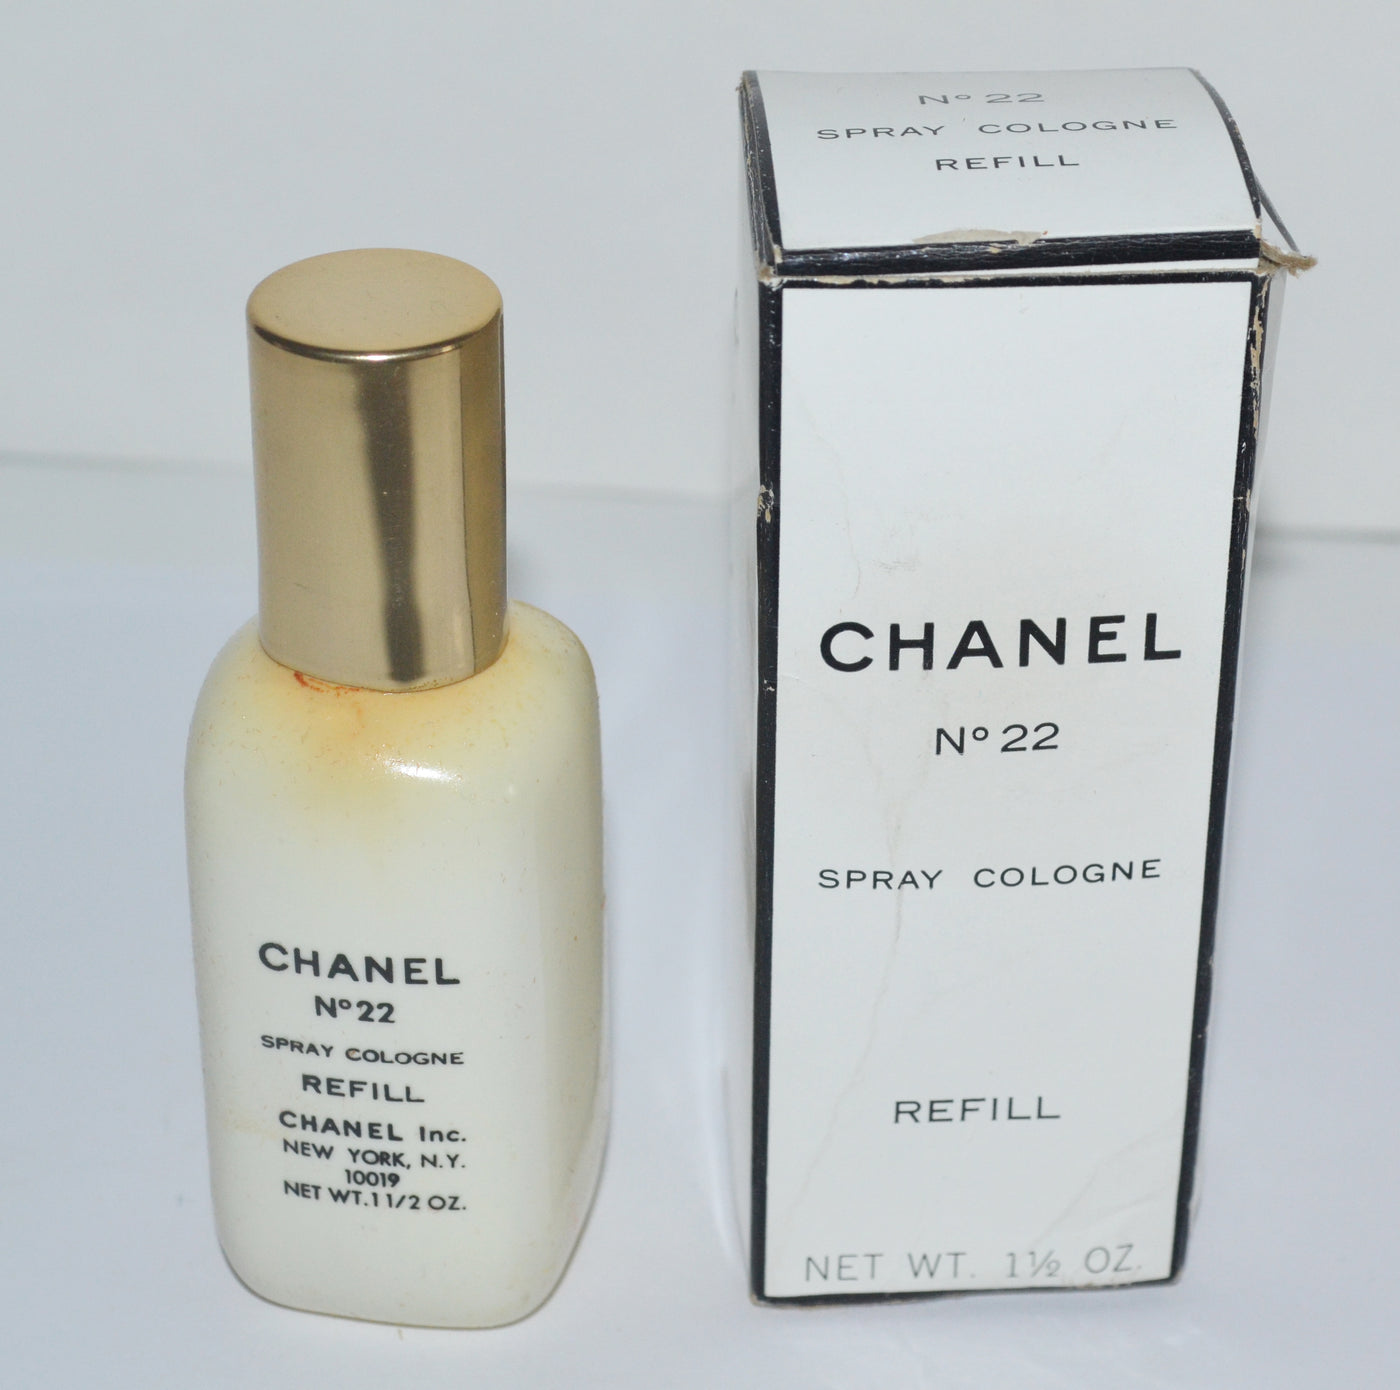 Chanel No 22 Spray Cologne Refill